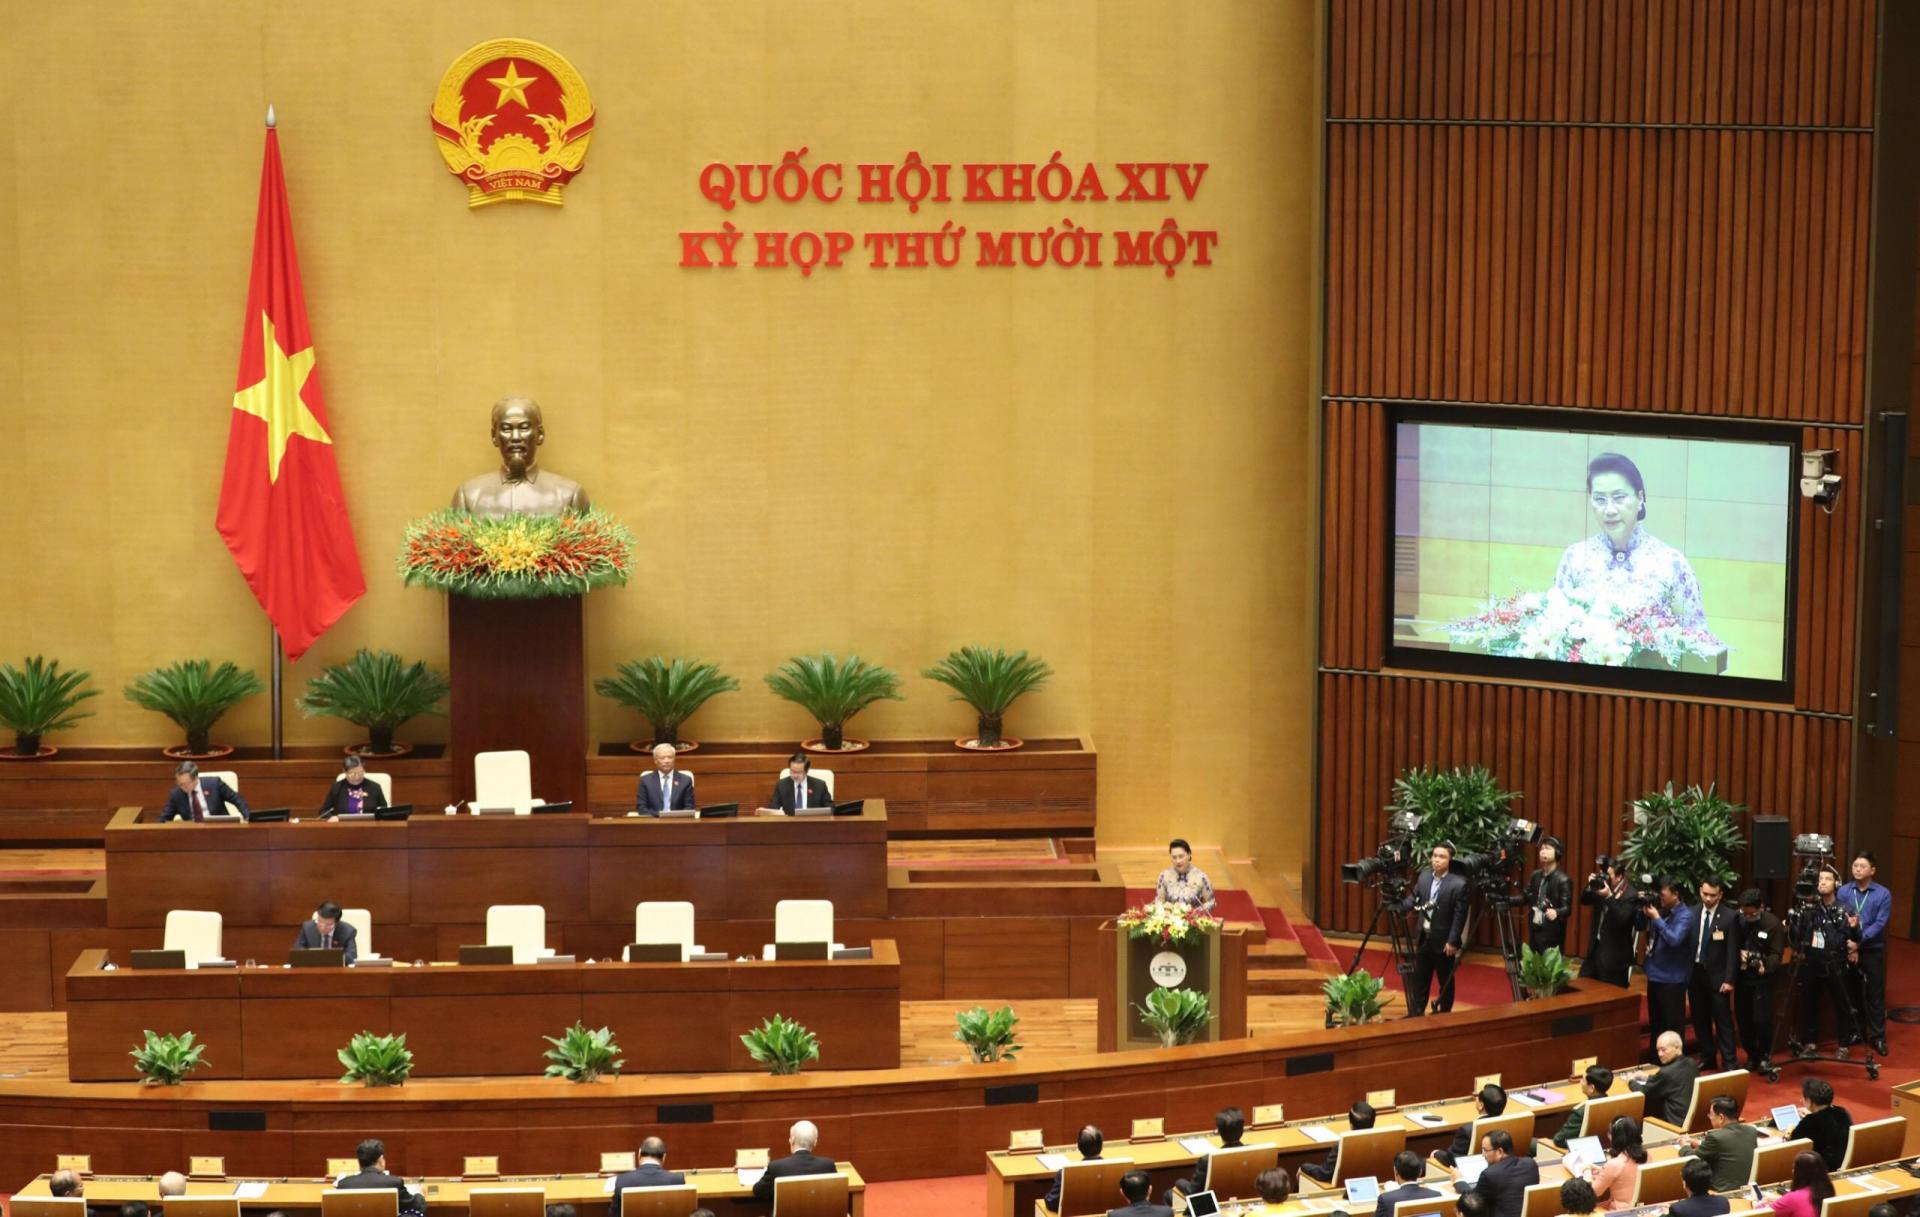 Chủ tịch Quốc hội Nguyễn Thị Kim Ngân: Quốc hội đã quyết định chủ trương đầu tư những dự án, công trình quan trọng quốc gia, có ý nghĩa lớn đối với sự phát triển kinh tế-xã hội của đất nước.